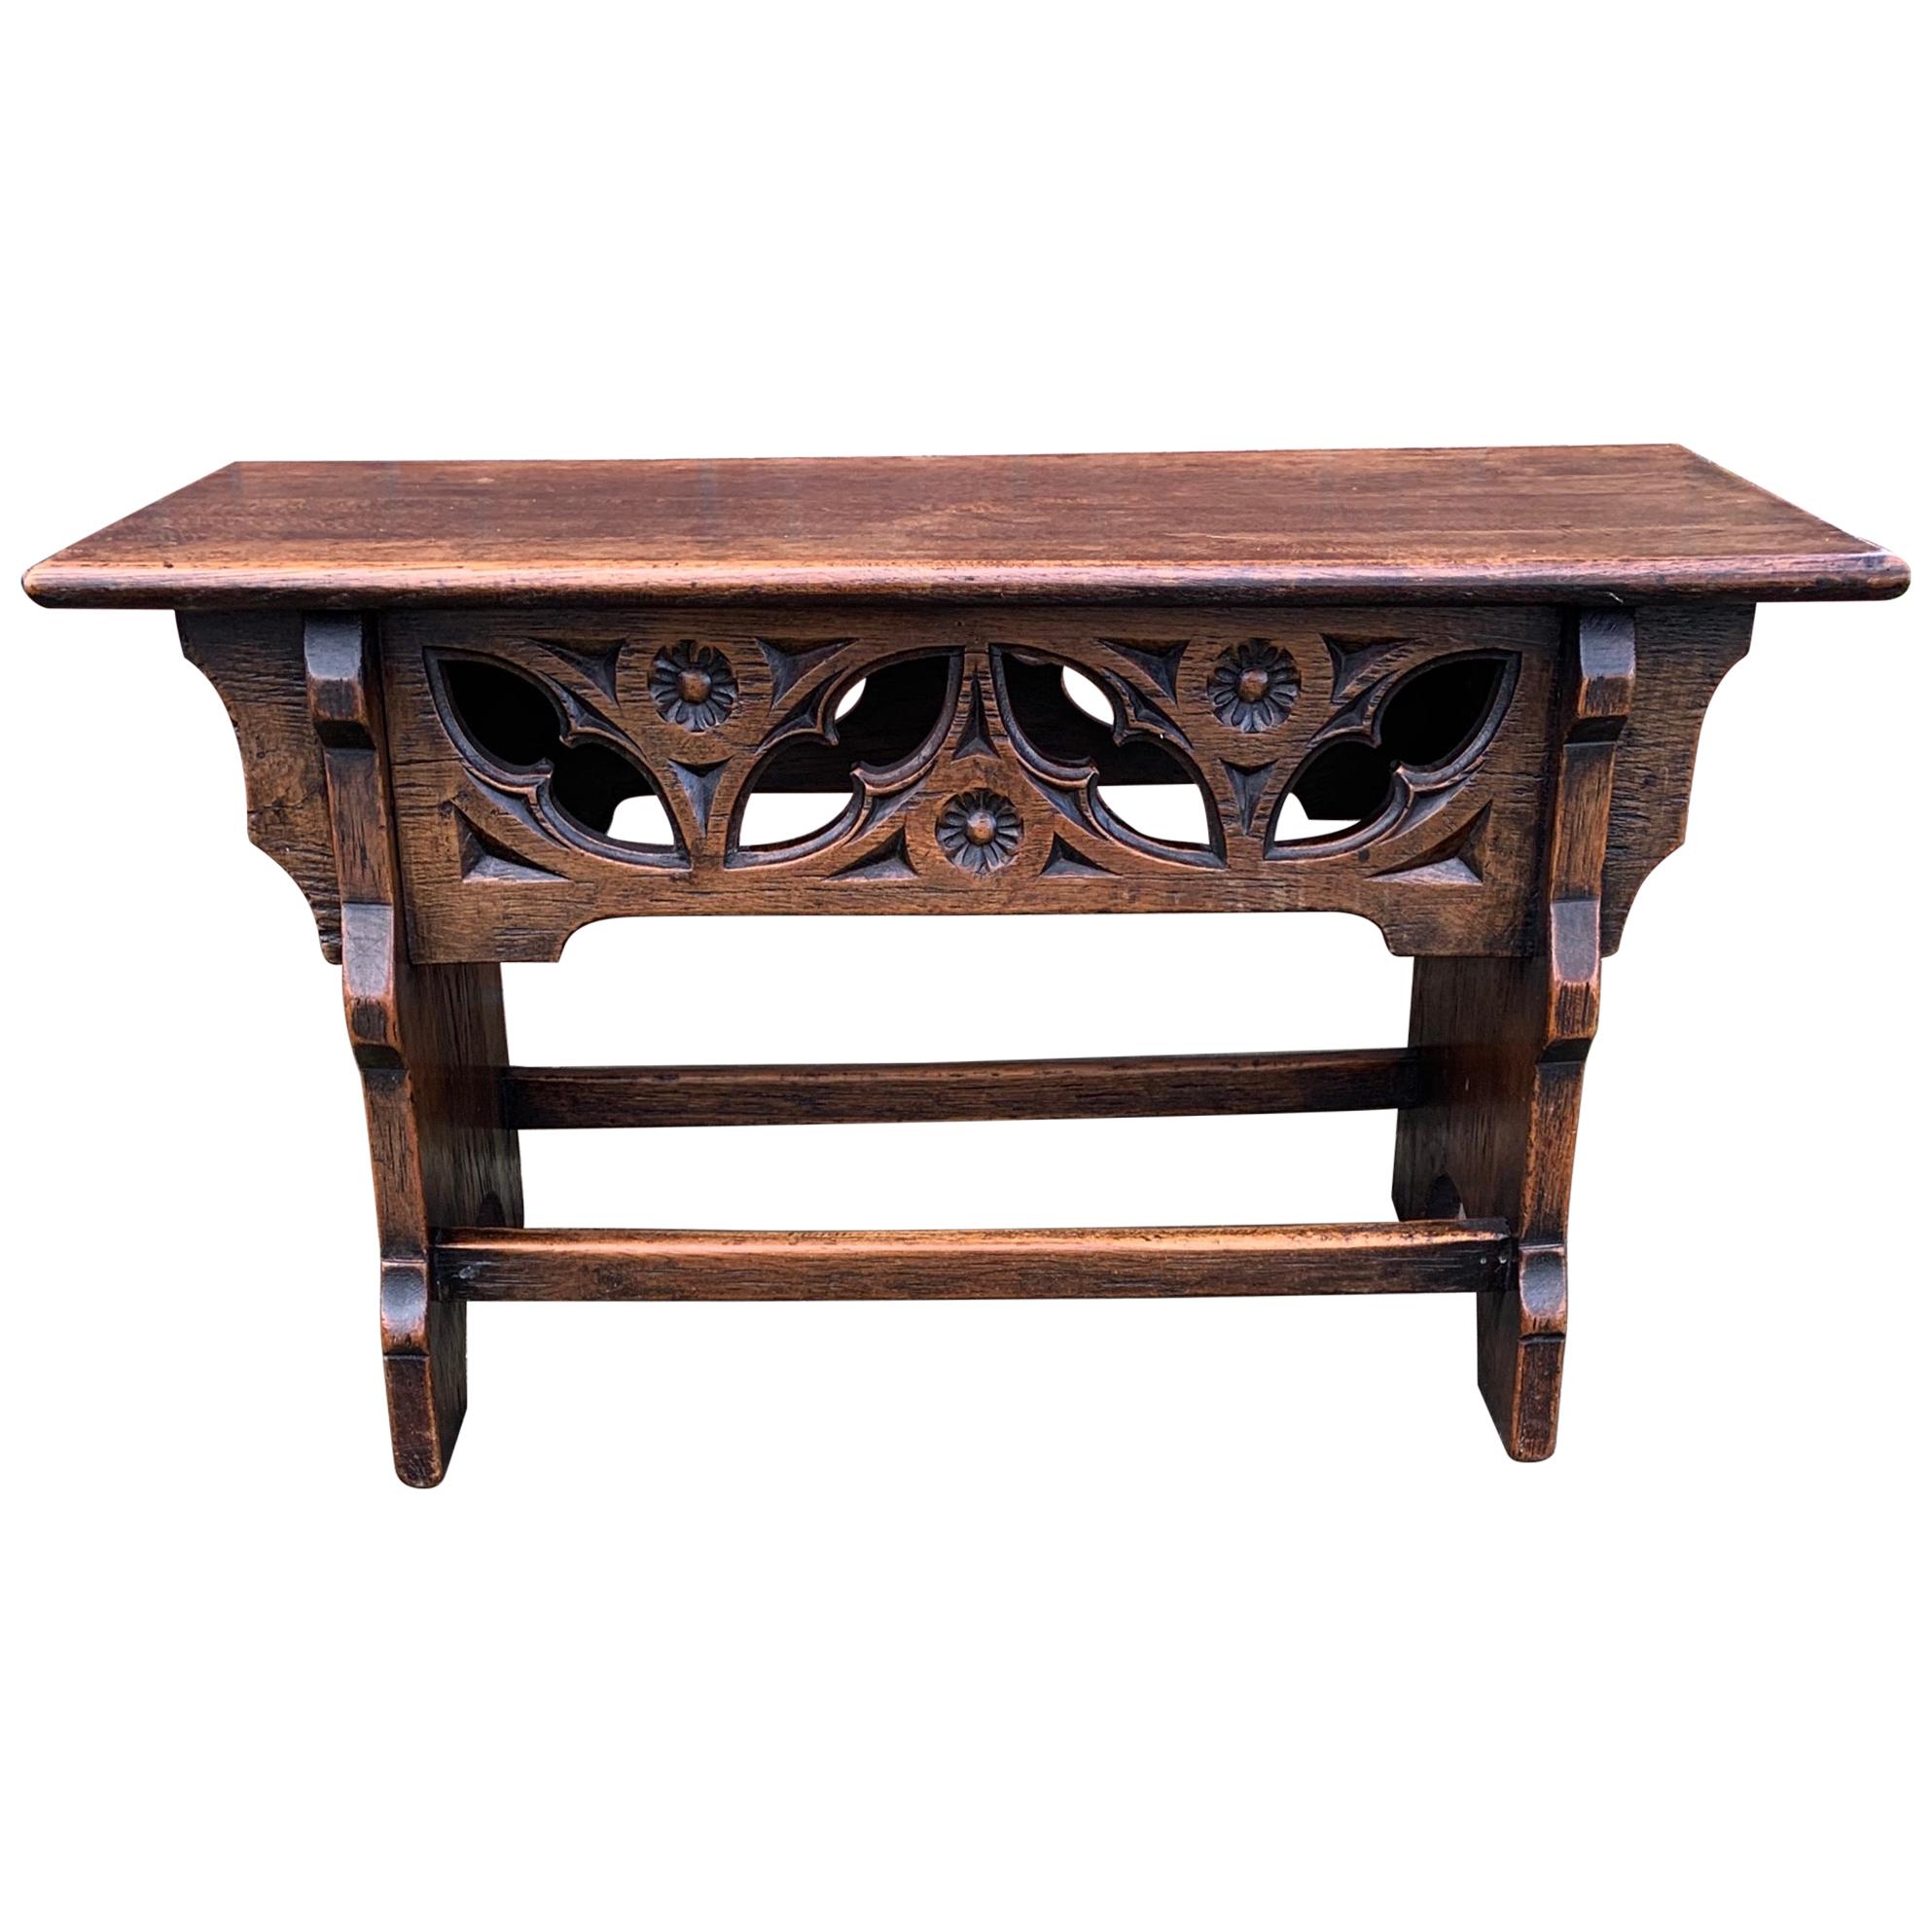 Antique tabouret ou table néo-gothique du début des années 1900 avec éléments sculptés à la main